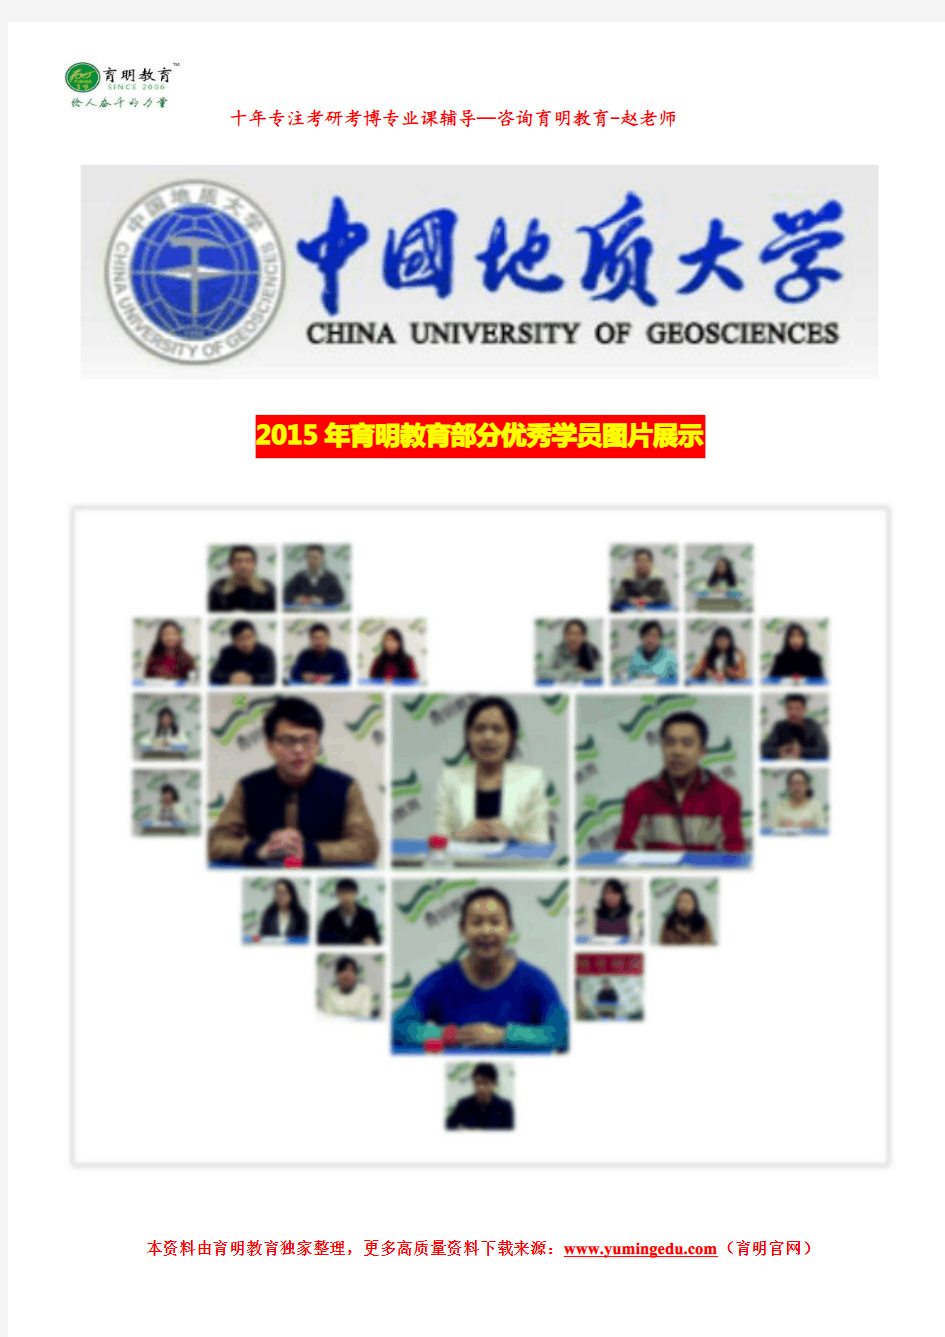 2017年中国地质大学(北京)公共管理专业考研参考书目、报录比、历年考研分数线、考试科目